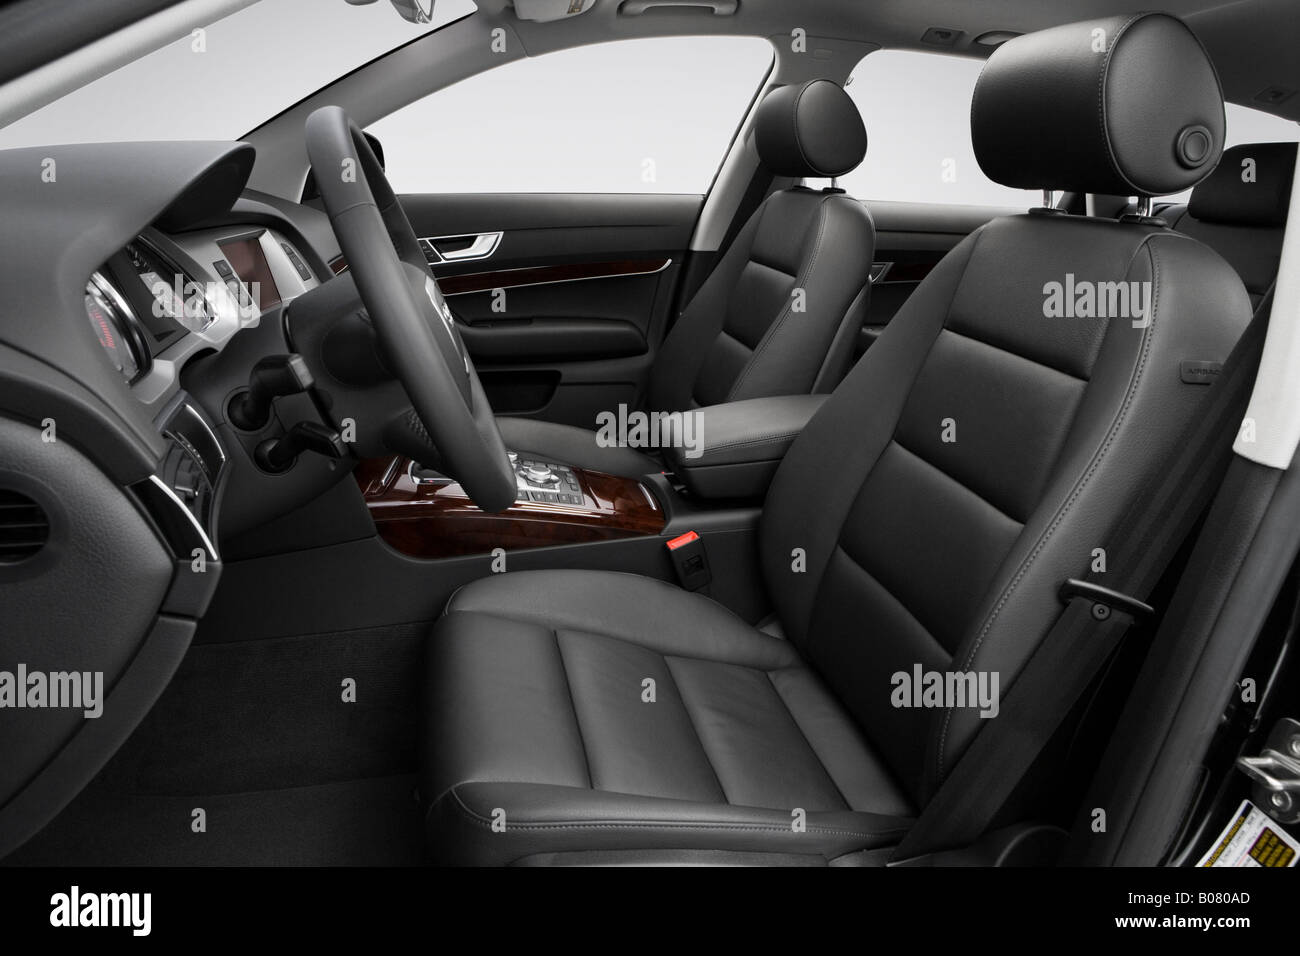 2008 Audi A6 Avant 3.2 FSI quattro en noir - sièges avant Banque D'Images